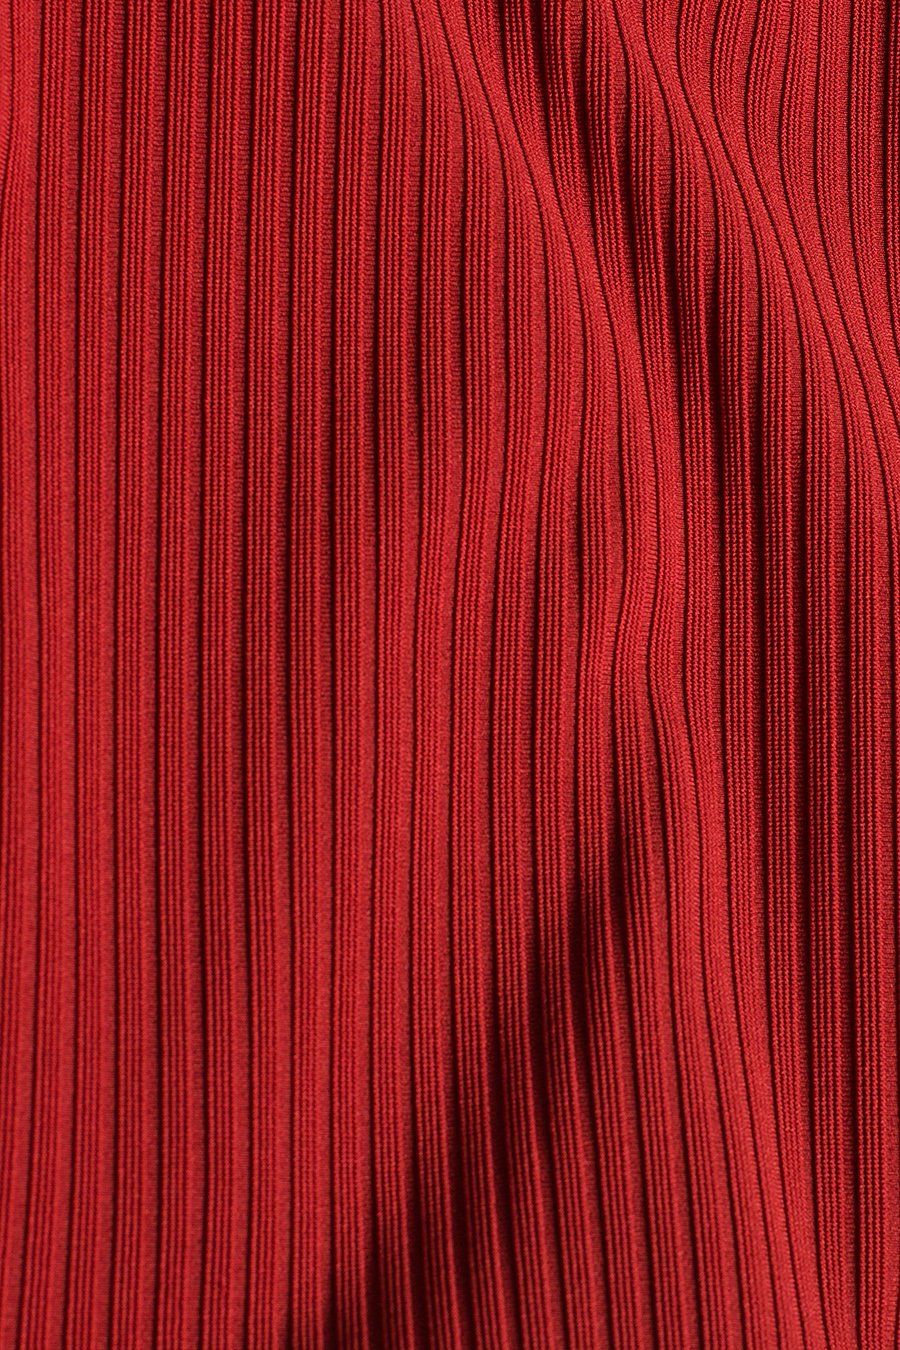 Γυναικείο φόρεμα Savina, Κόκκινο 3